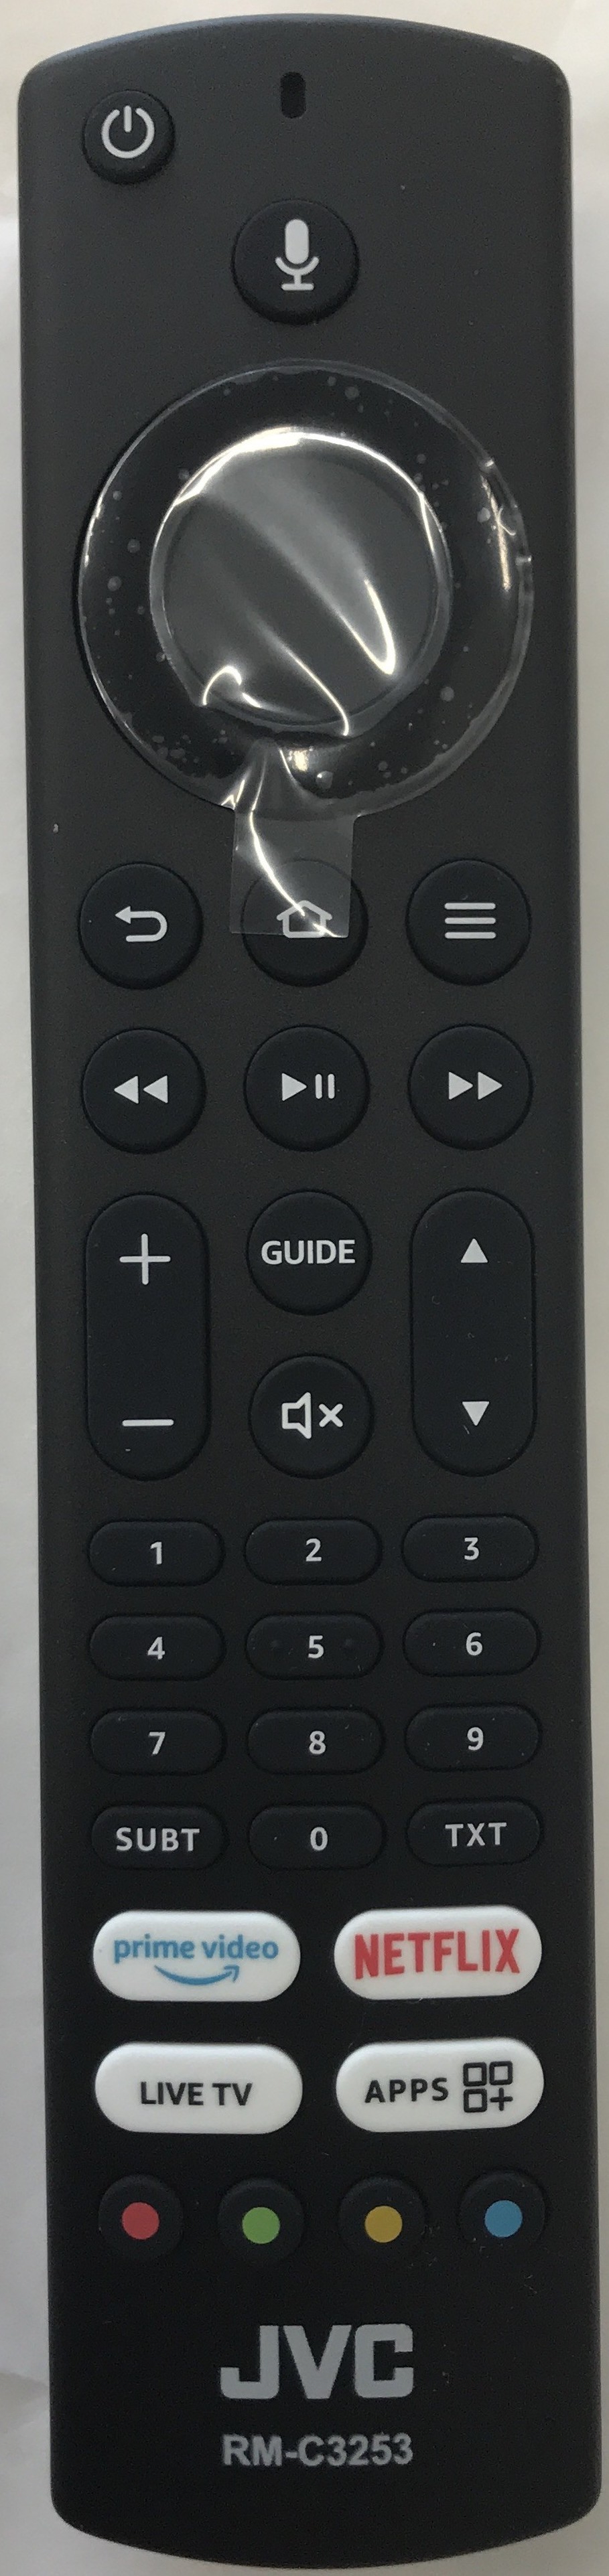 JVC LT-40CF890 Smart Remote Control Original